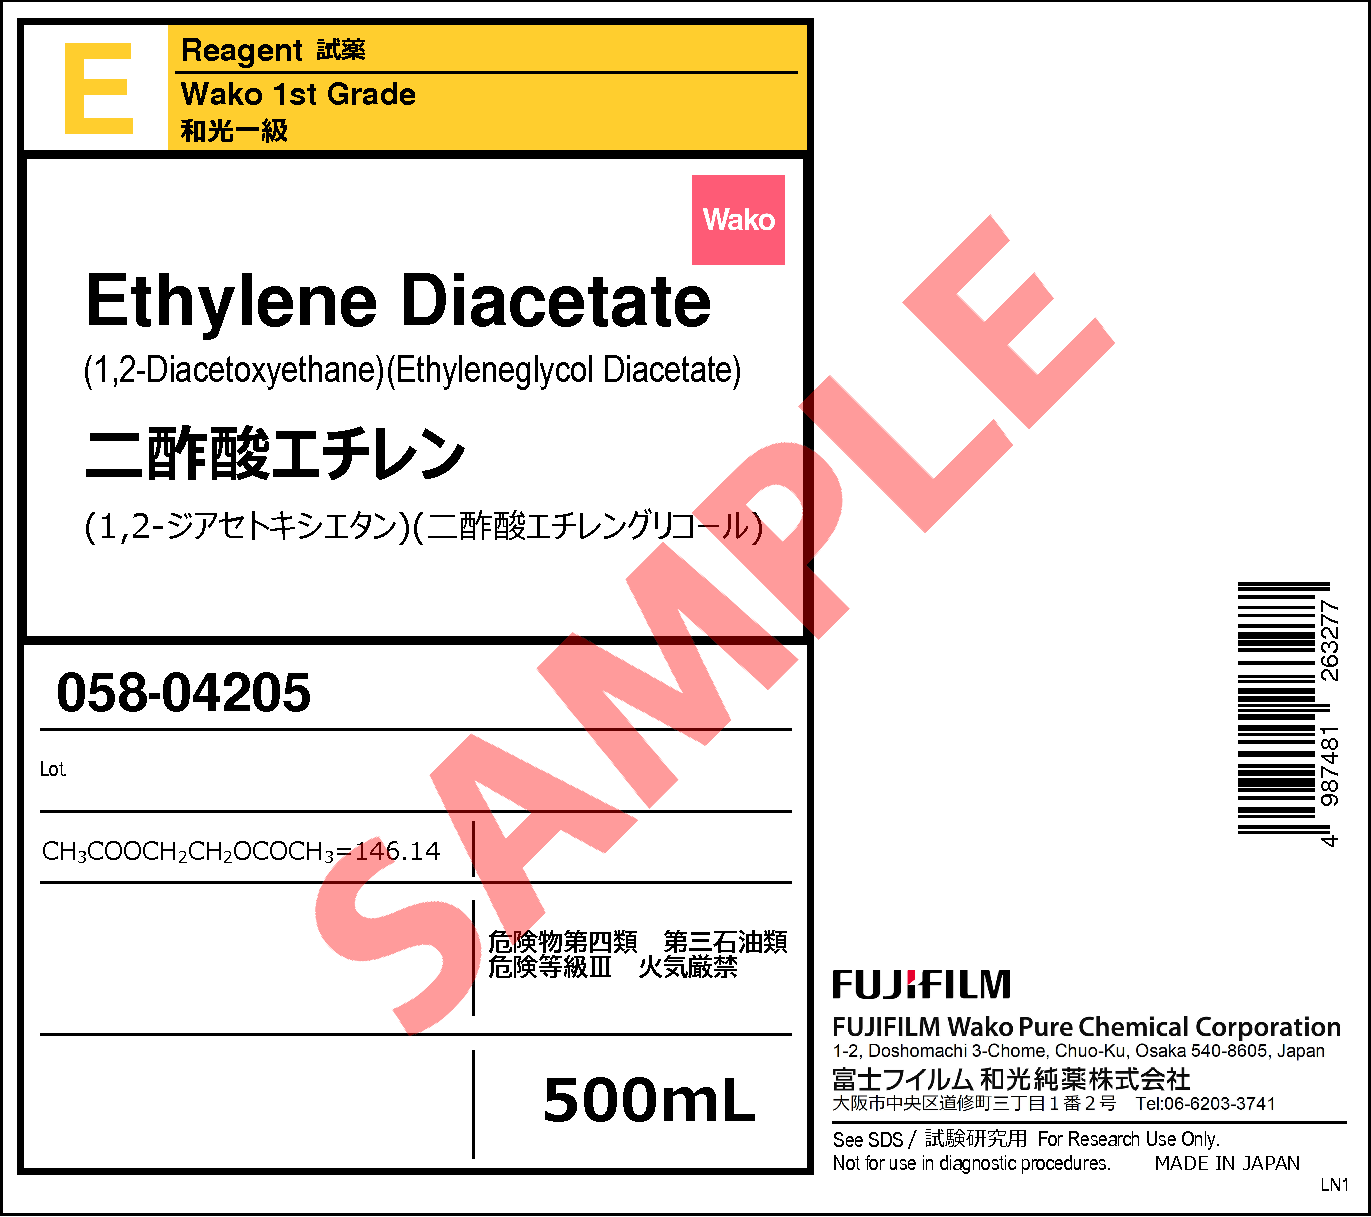 111-55-7・二酢酸エチレン・Ethylene Diacetate・054-04202・058-04205 